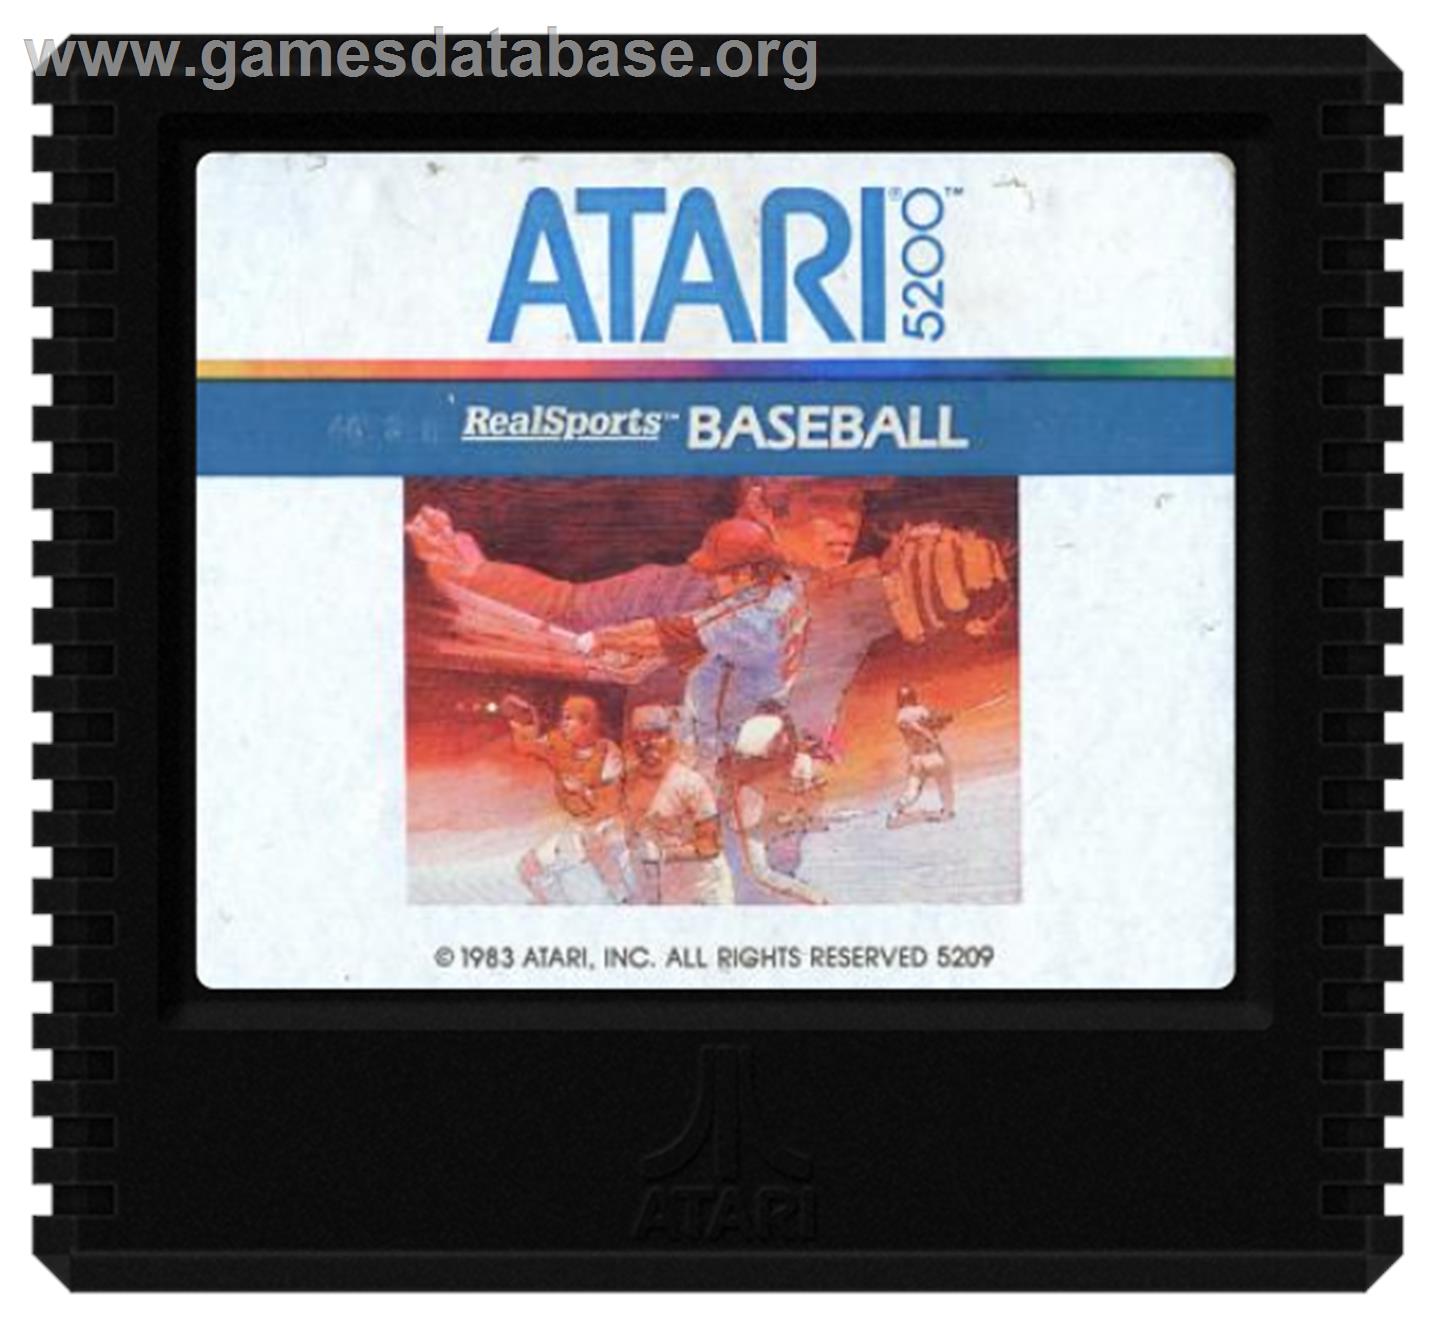 RealSports Baseball - Atari 5200 - Artwork - Cartridge